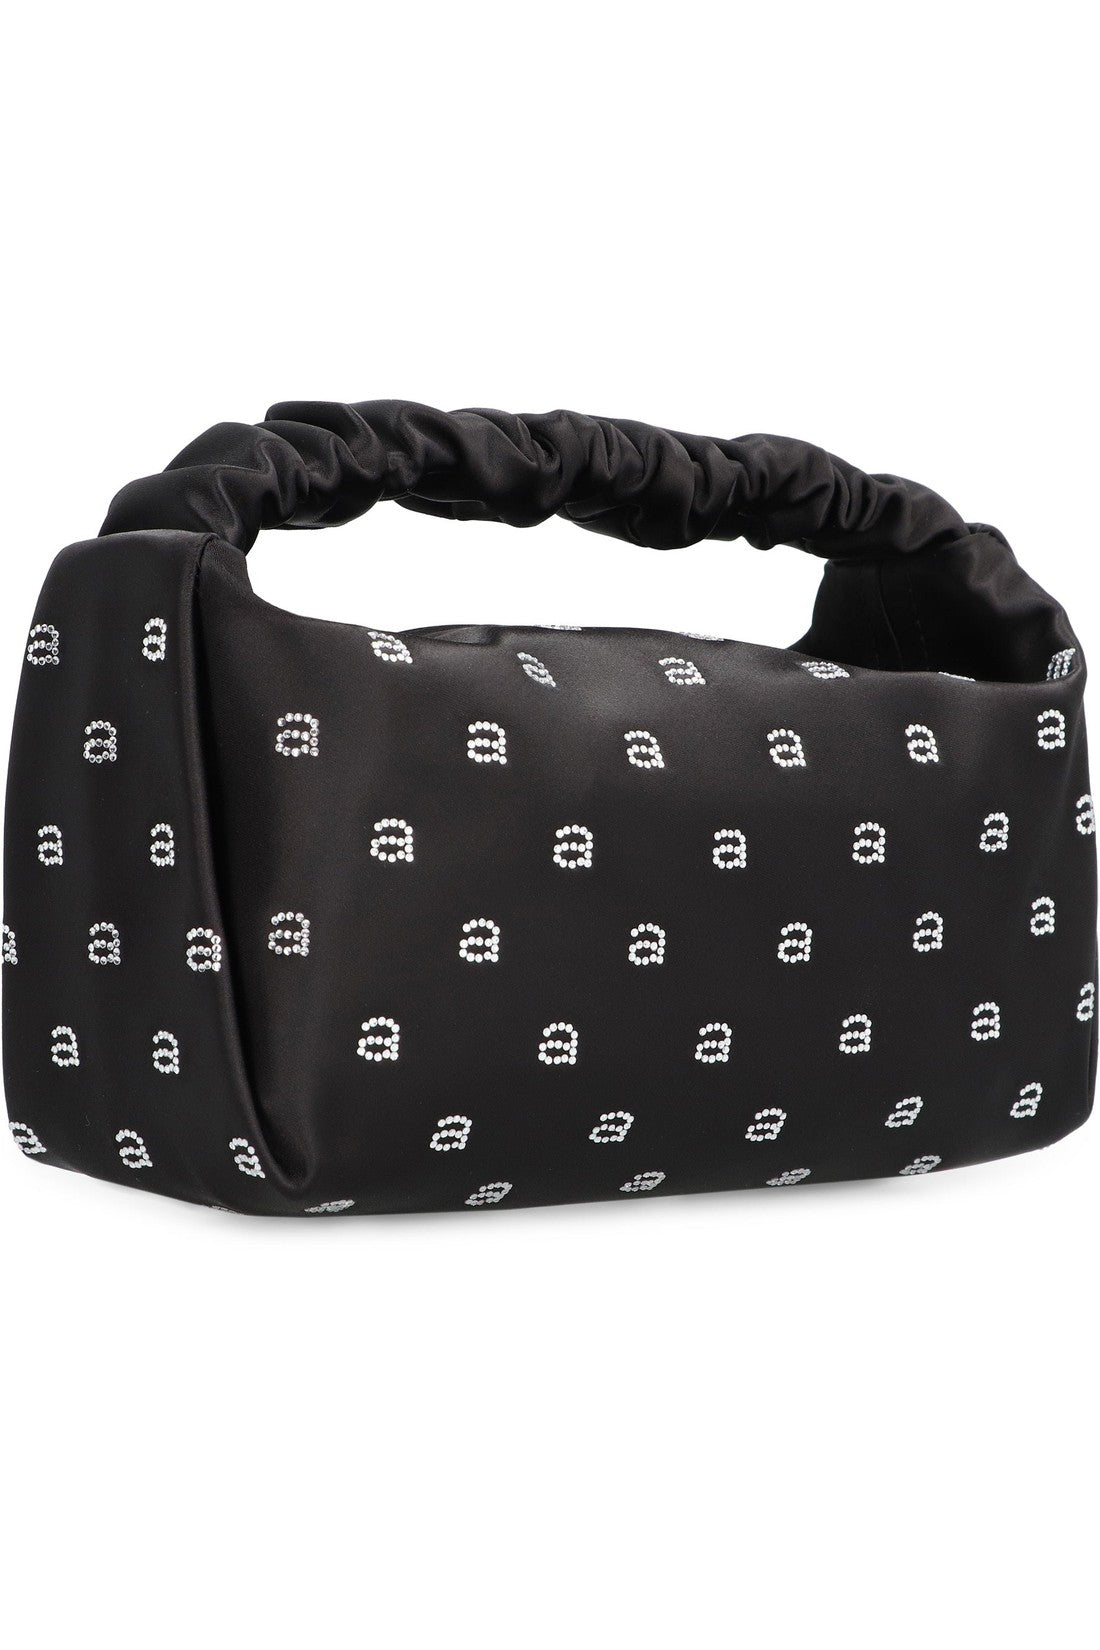 Alexander Wang-OUTLET-SALE-Scrunchie Mini handbag-ARCHIVIST